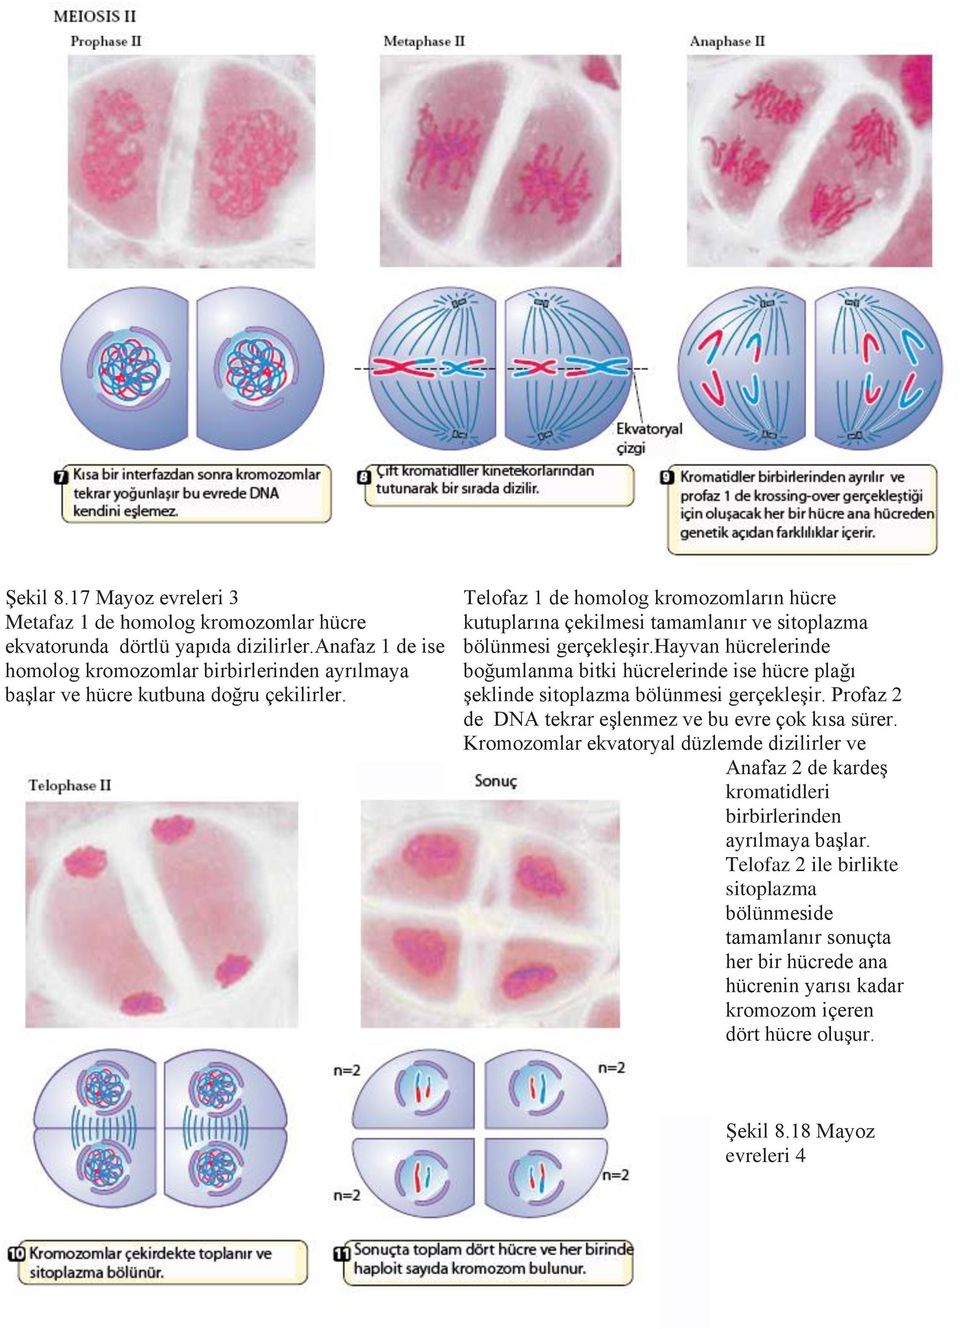 Telofaz 1 de homolog kromozomların hücre kutuplarına çekilmesi tamamlanır ve sitoplazma bölünmesi gerçekleşir.